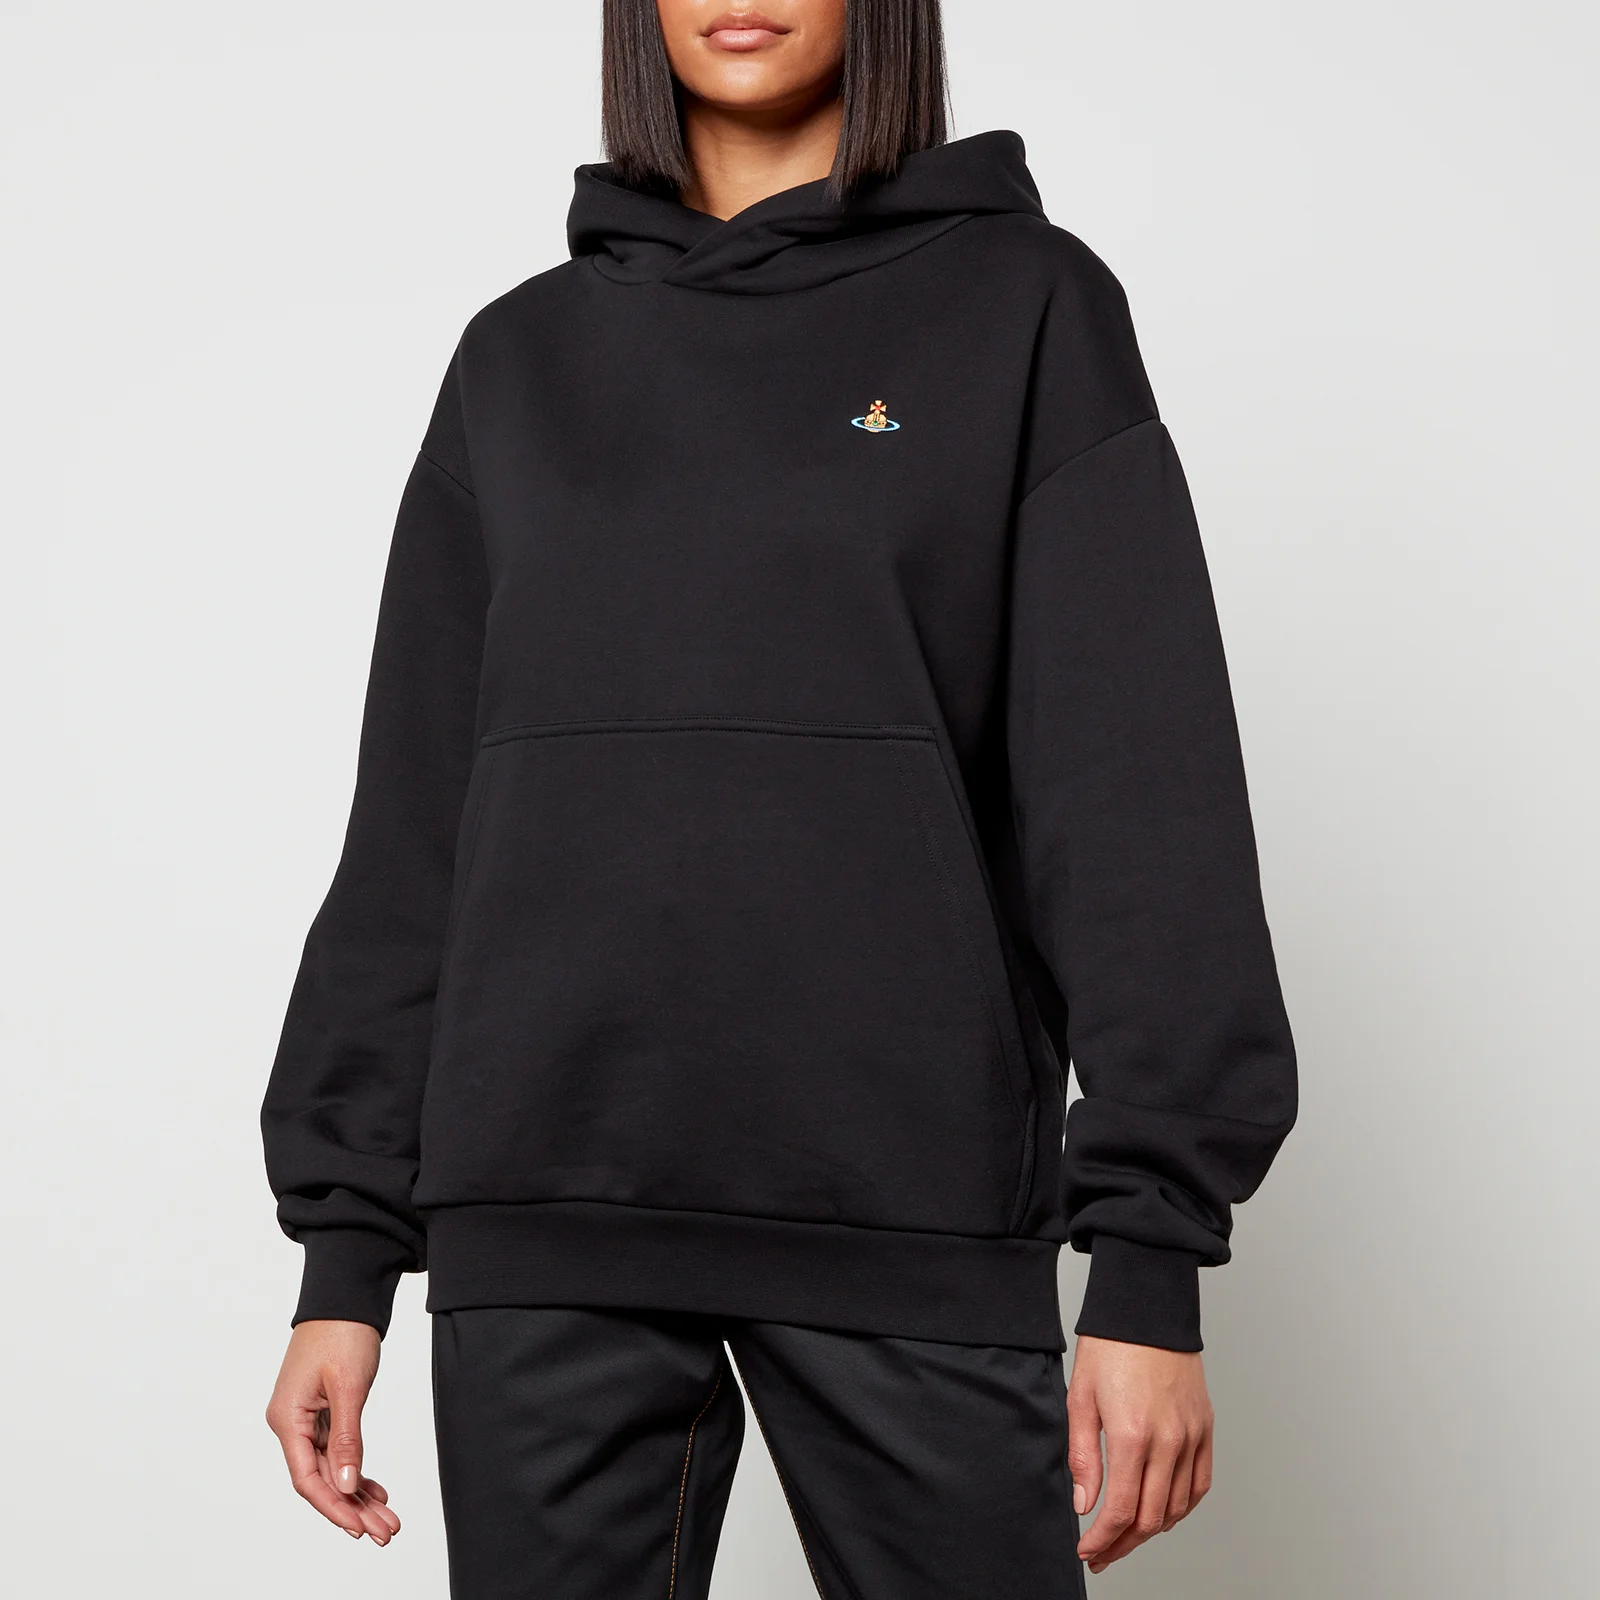 Vivienne Westwood Women's Pullover Sweatshirt Hoodie - Black Image 1